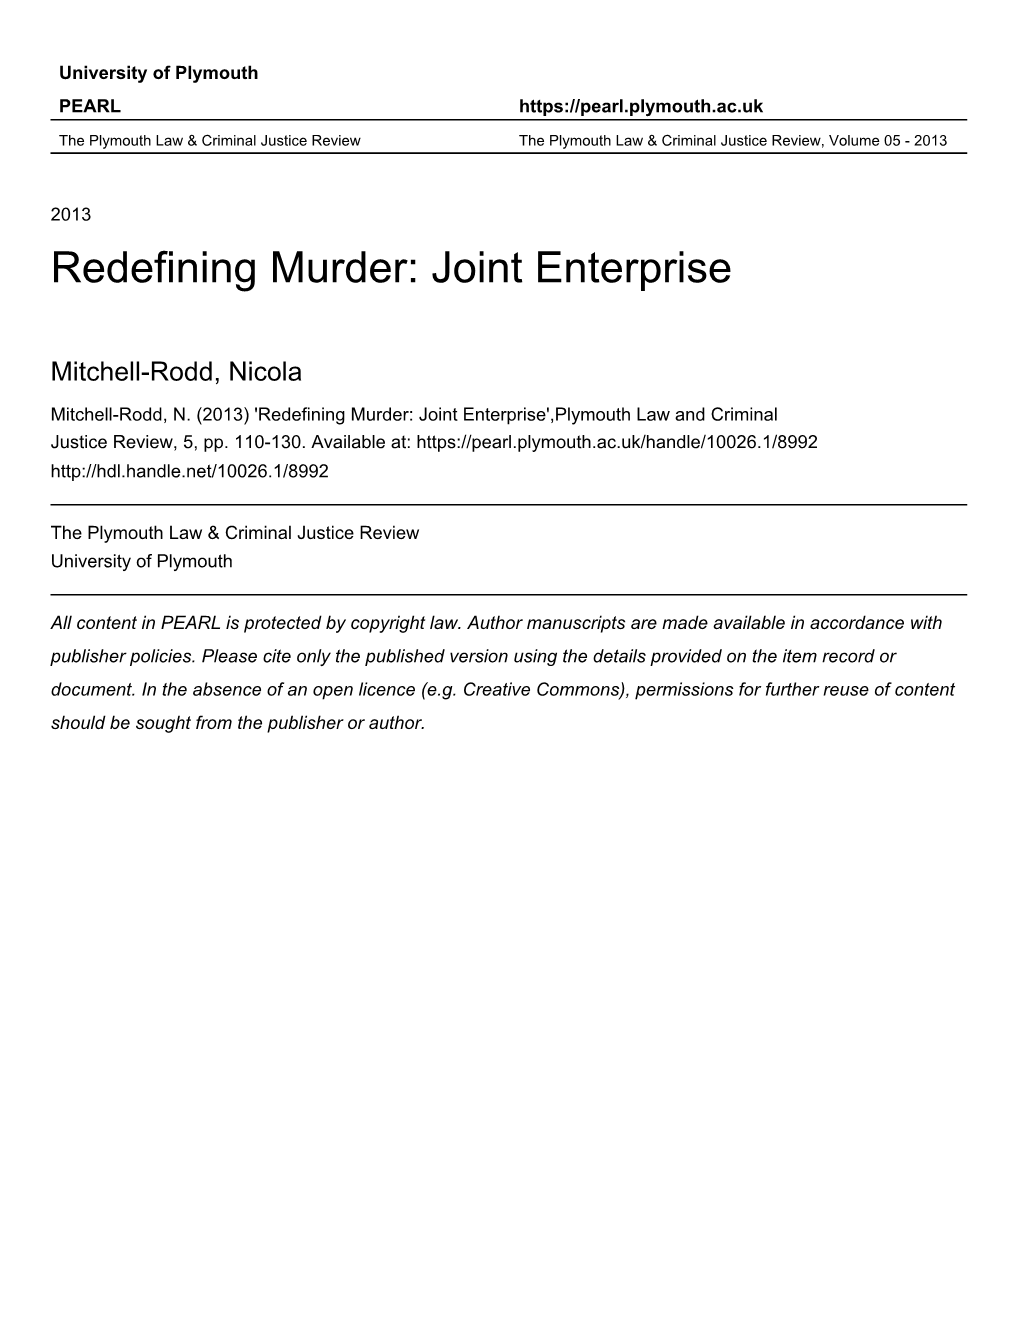 REDEFINING MURDER: JOINT ENTERPRISE Nicola Mitchell-Rodd